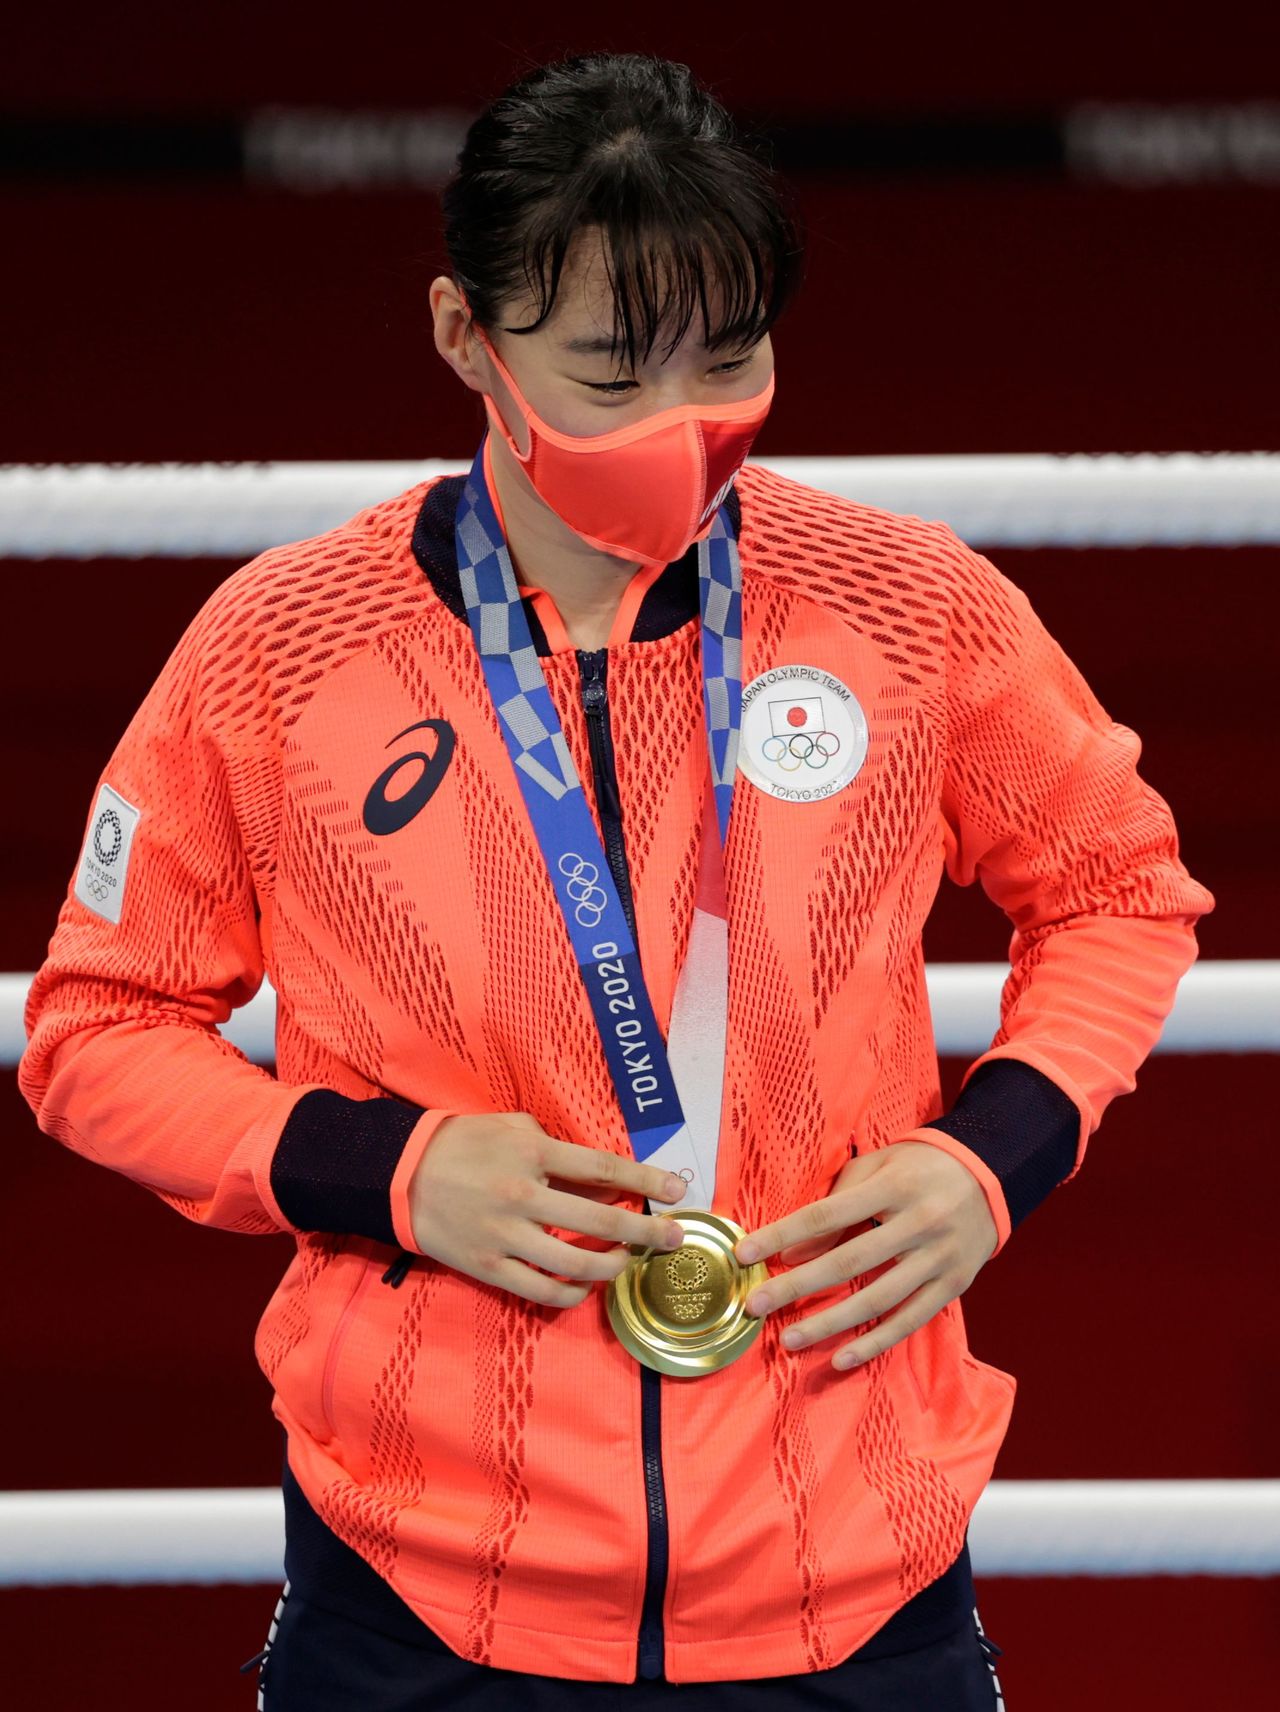 اليابانية سينا إيري بعد فوزها ببذهبية وزن الريشة في الملاكمة بأولمبياد طوكيو 2020 يوم الثلاثاء. تصوير: كارل ريسين - رويترز.